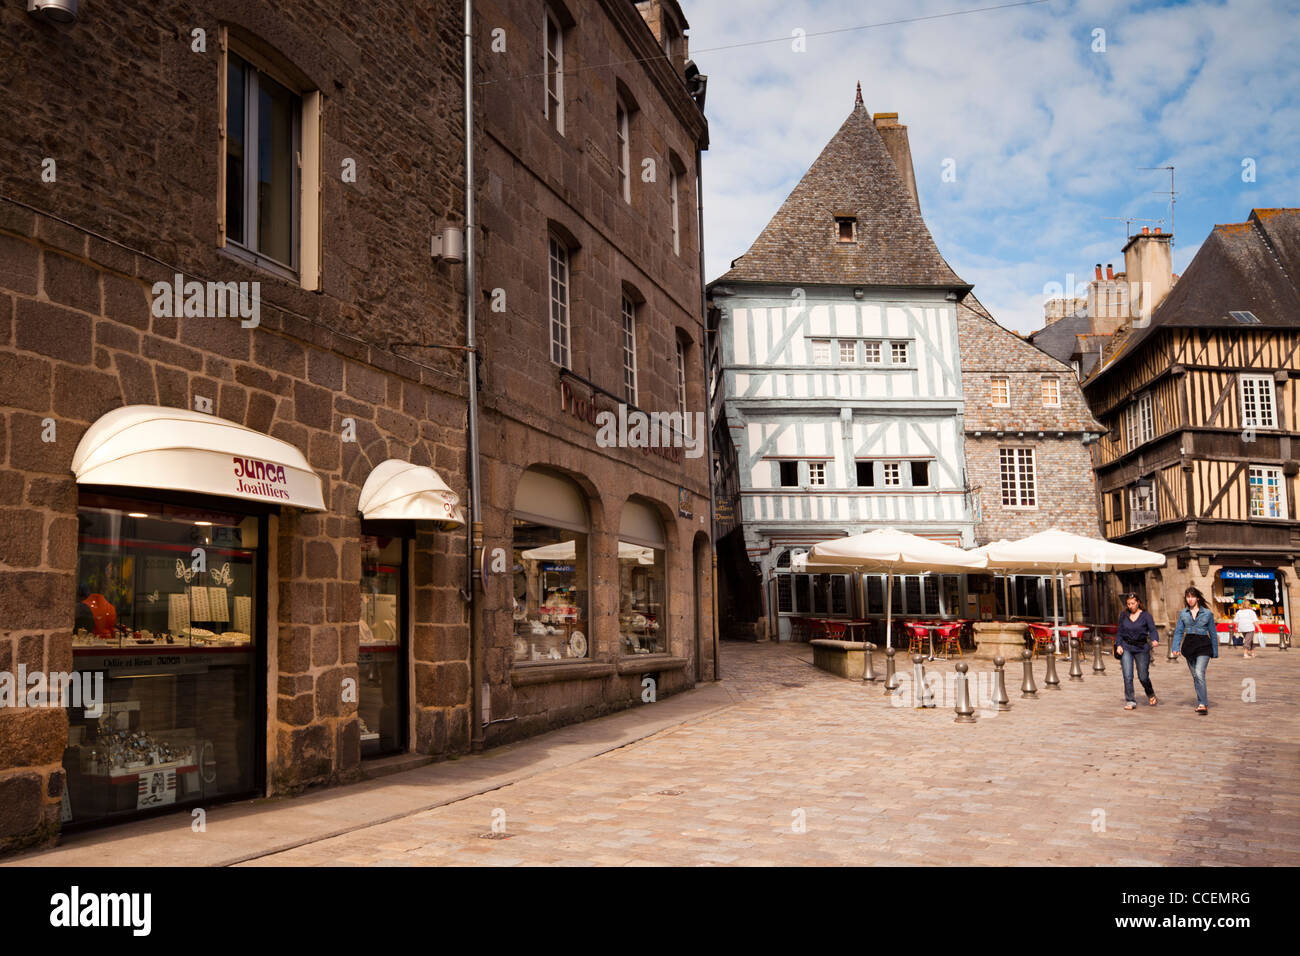 Scène de rue à Dinan, Bretagne France. Deux jeunes femmes à pied à travers le centre-ville, avec ses vieux bâtiments à colombages et c Banque D'Images